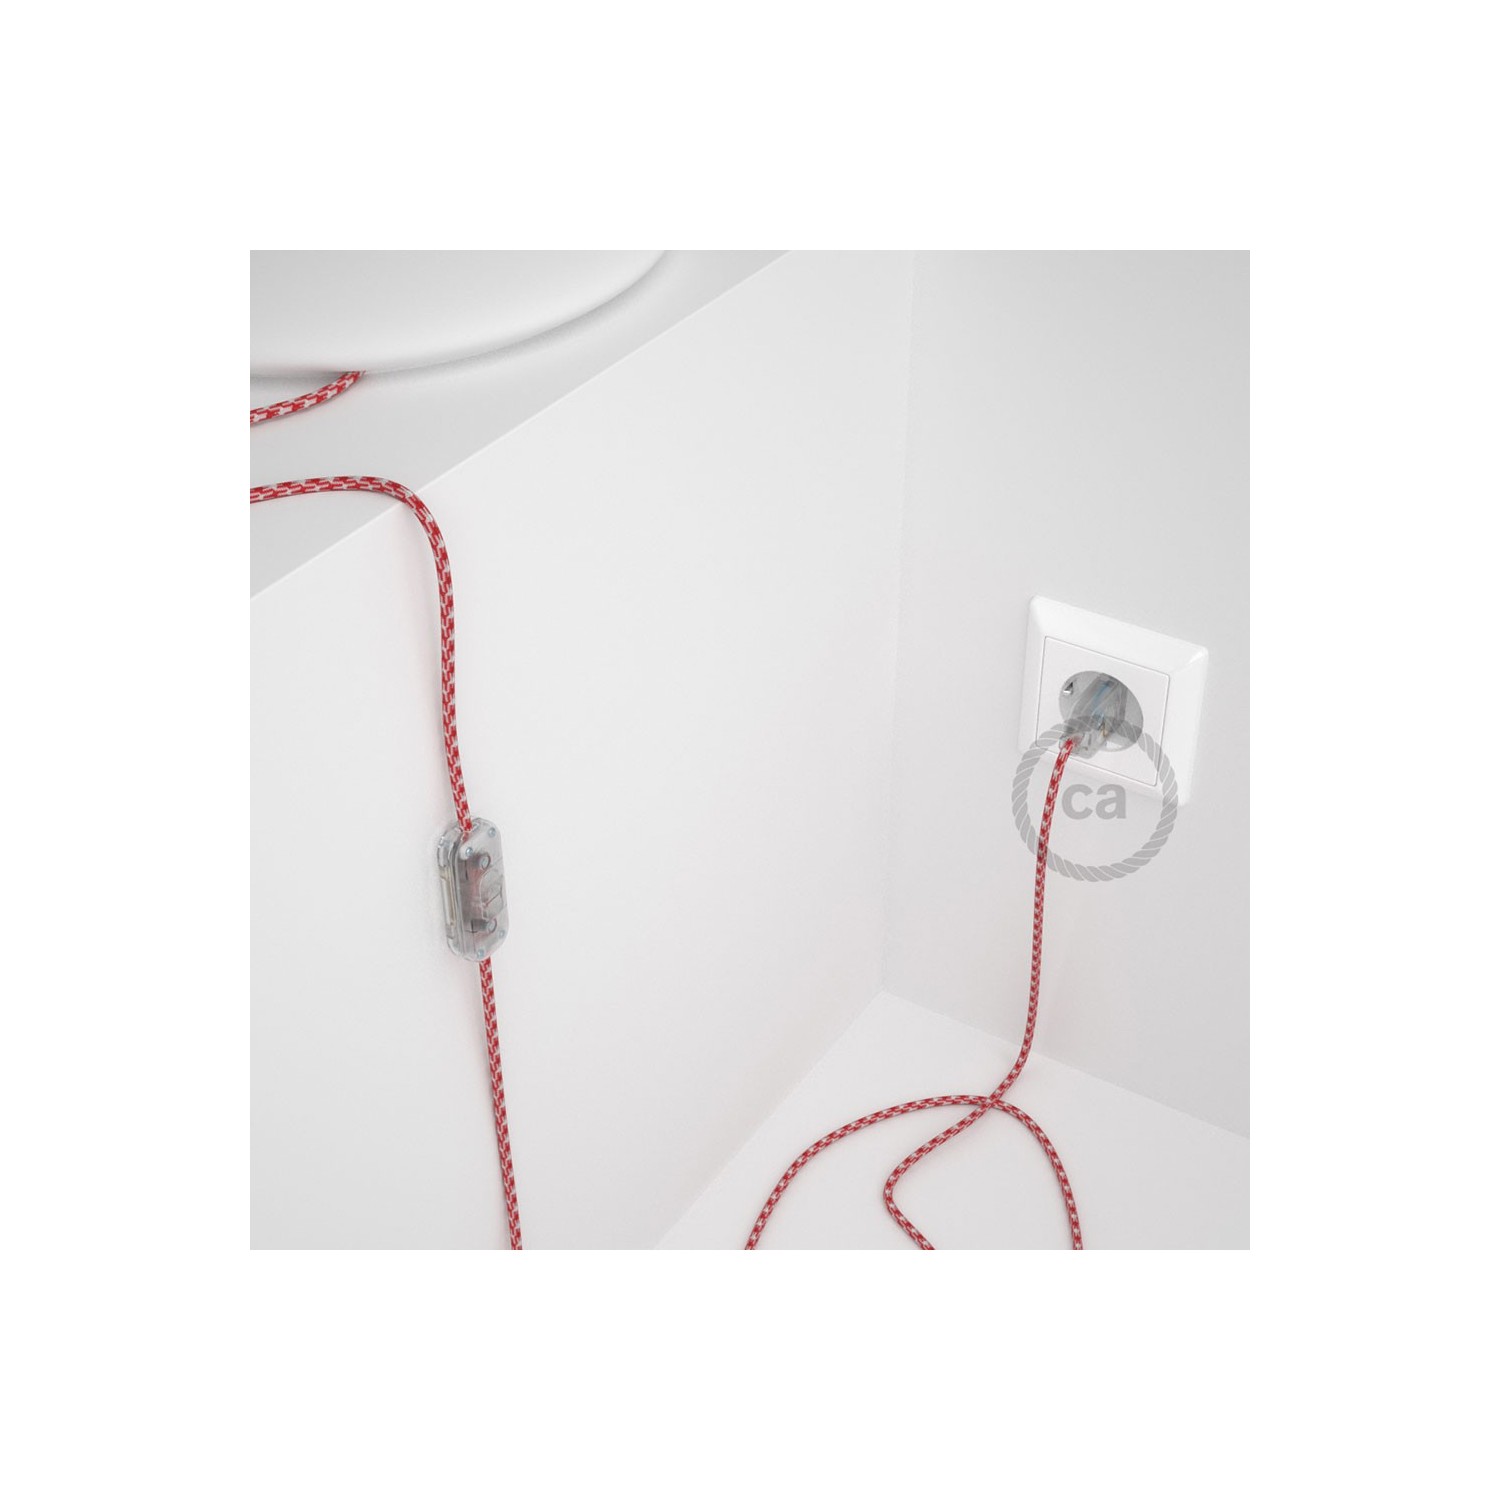 Cablaggio per lampada, cavo RP09 Effetto Seta Bicolore Rosso 1,80 m. Scegli il colore dell'interruttore e della spina.